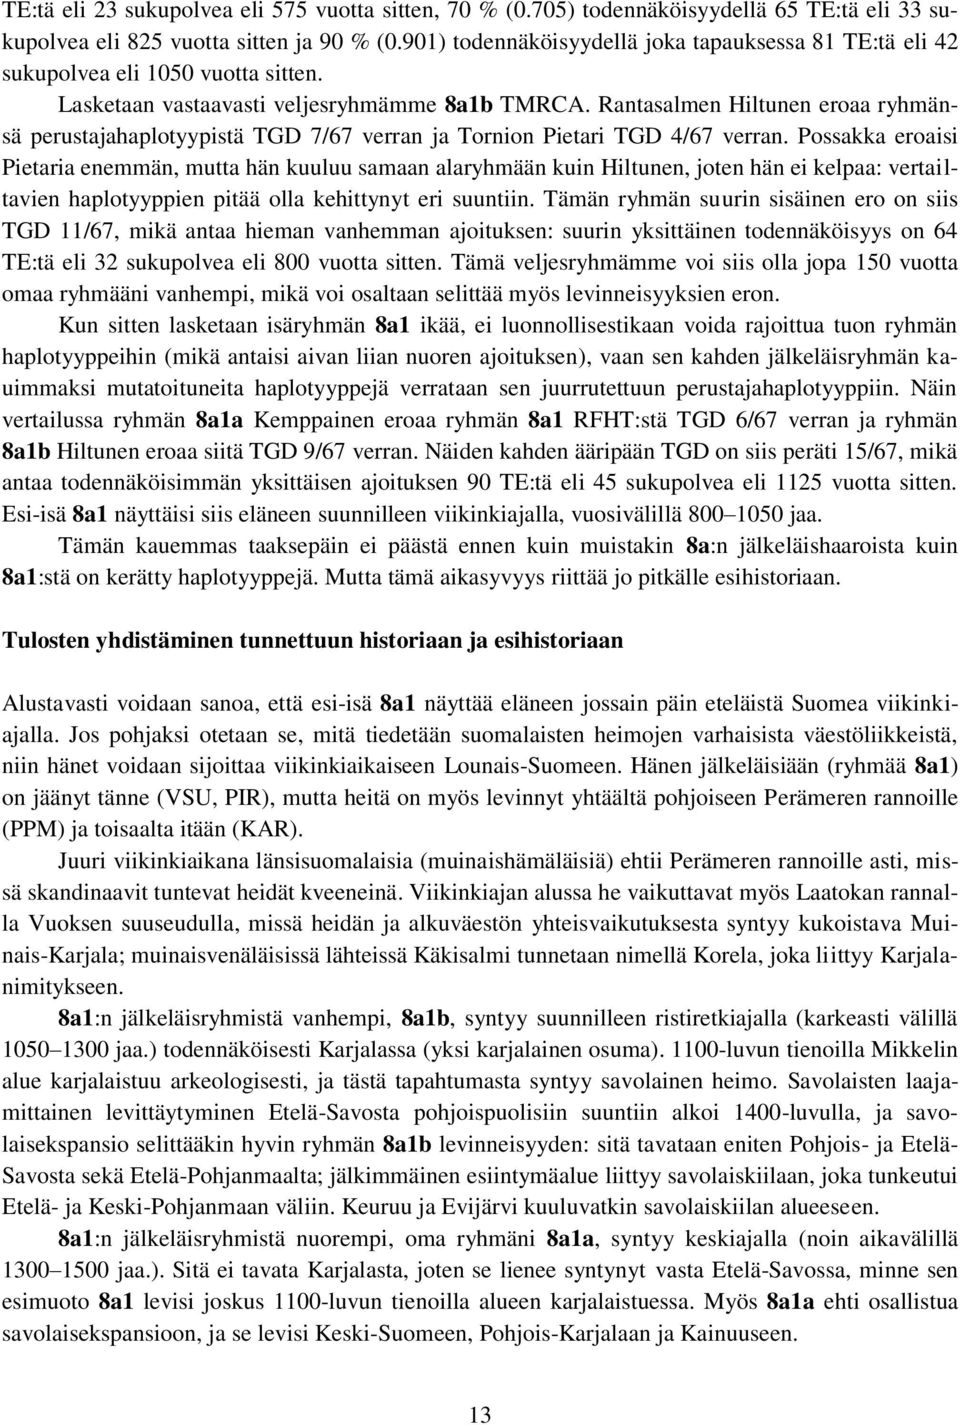 Rantasalmen Hiltunen eroaa ryhmänsä perustajahaplotyypistä TGD 7/67 verran ja Tornion Pietari TGD 4/67 verran.